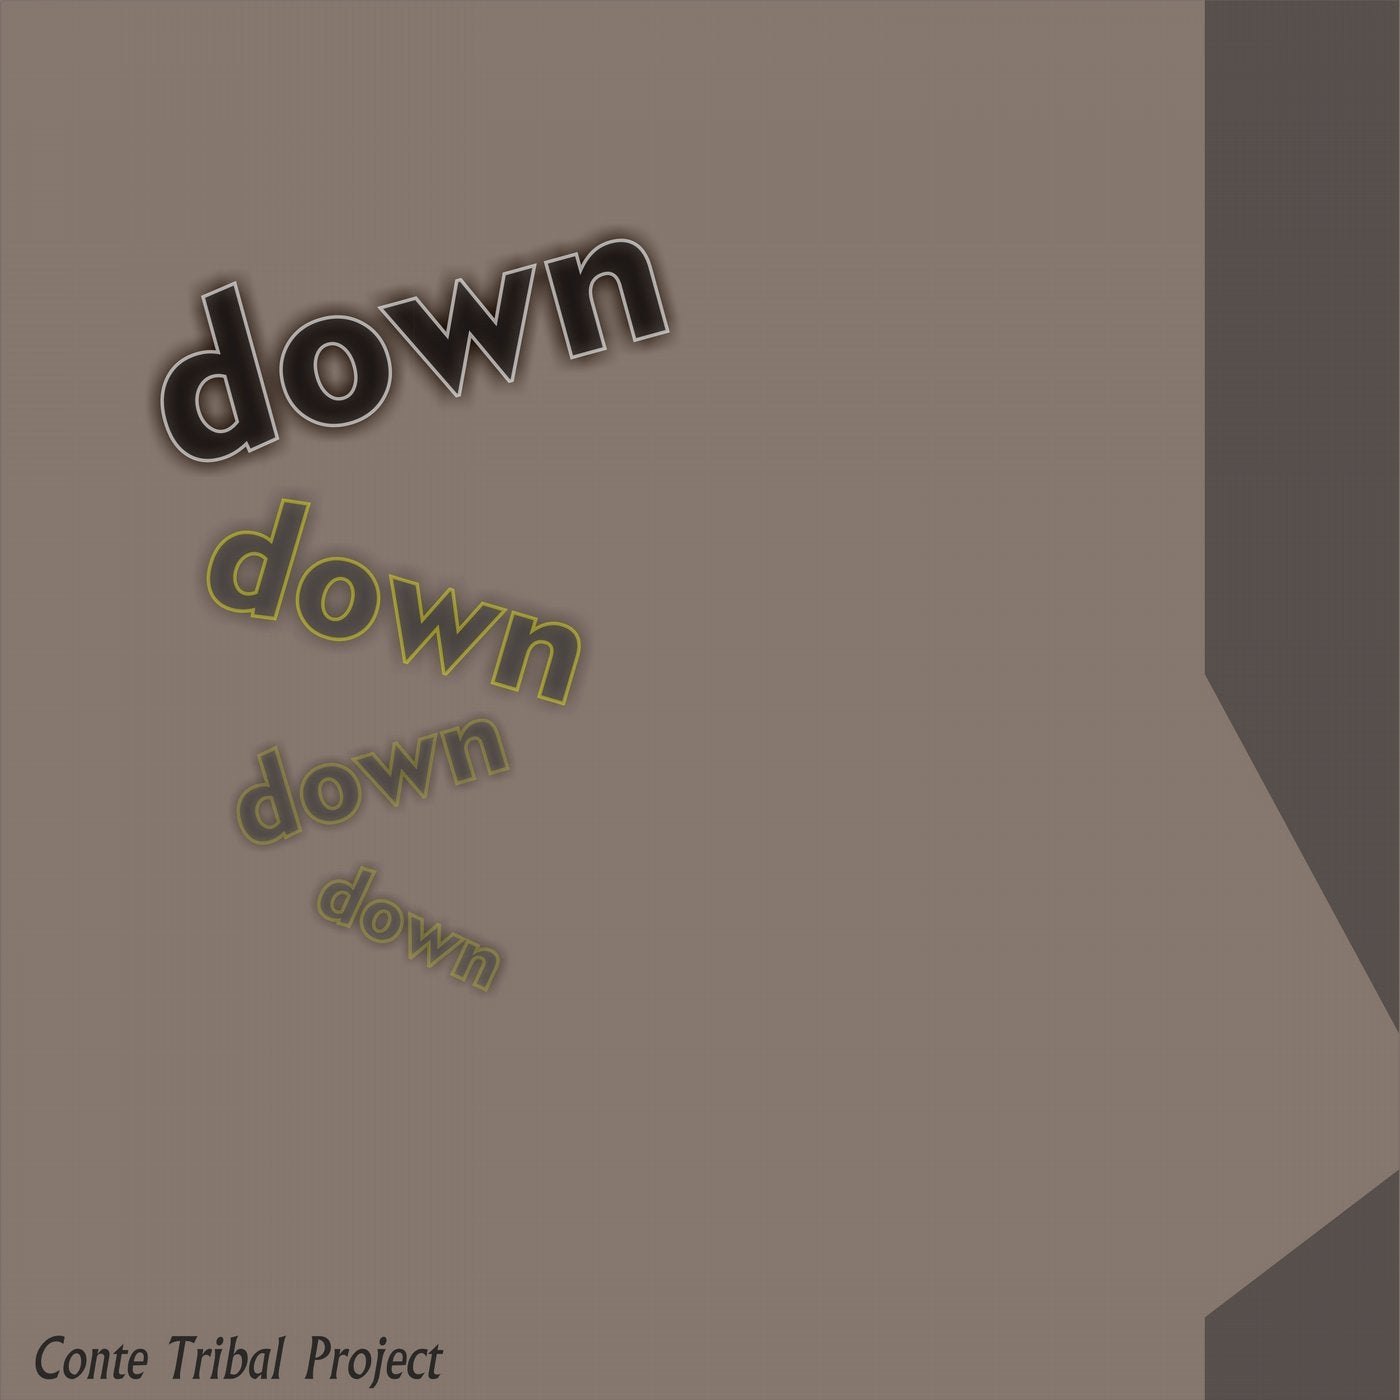 Down Down Down Down